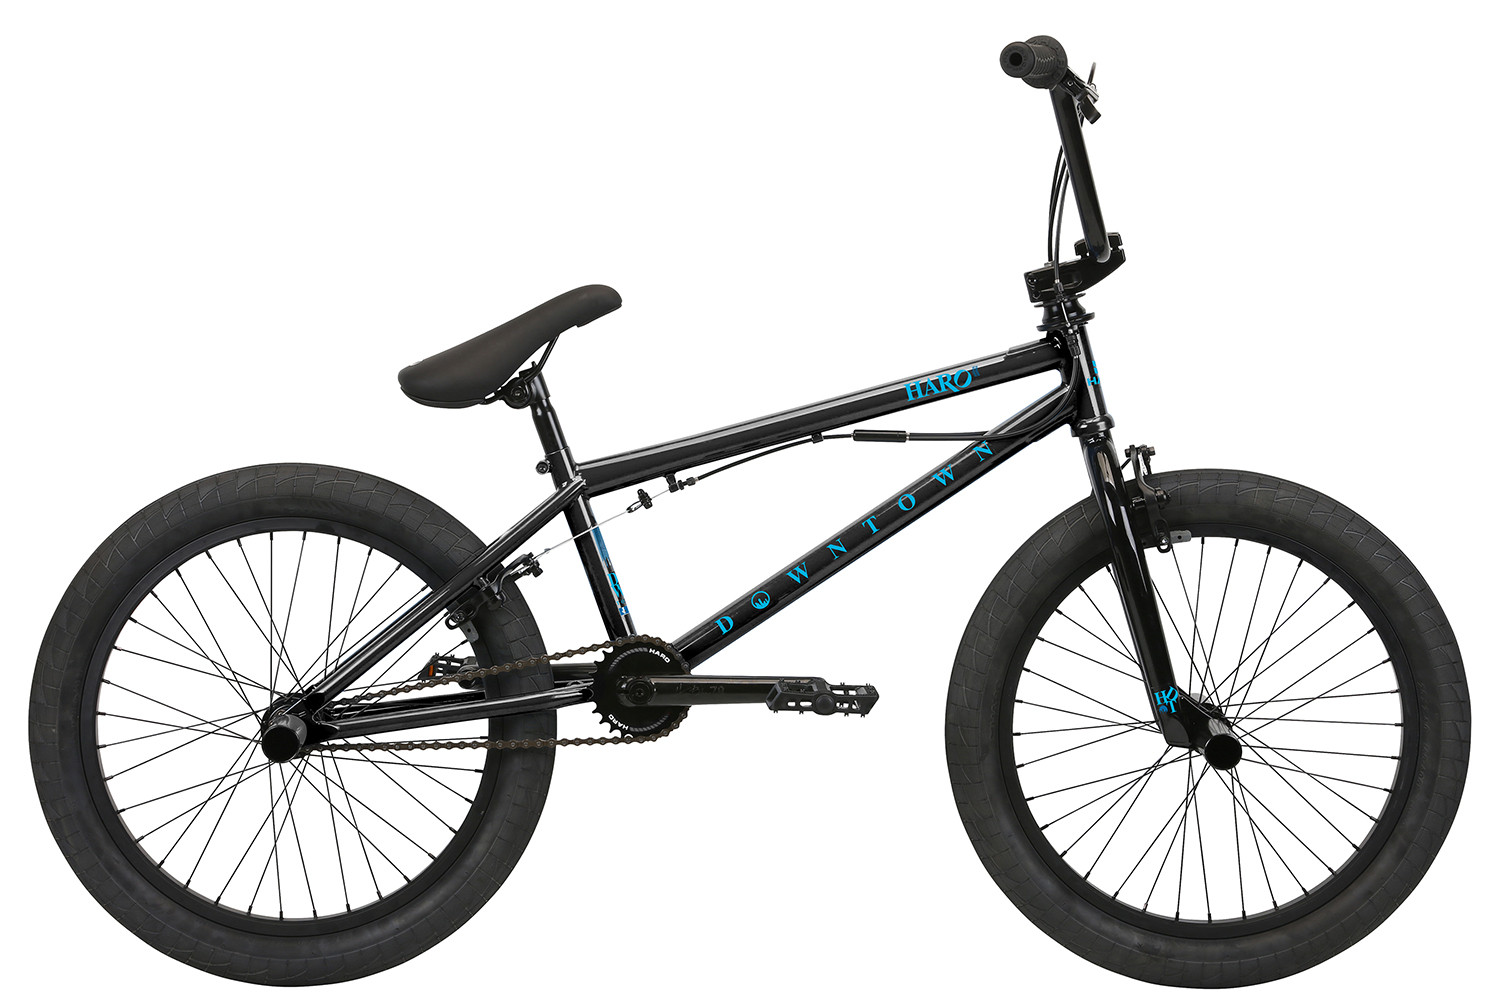  Отзывы о Велосипеде BMX Haro Downtown DLX (2021) 2021